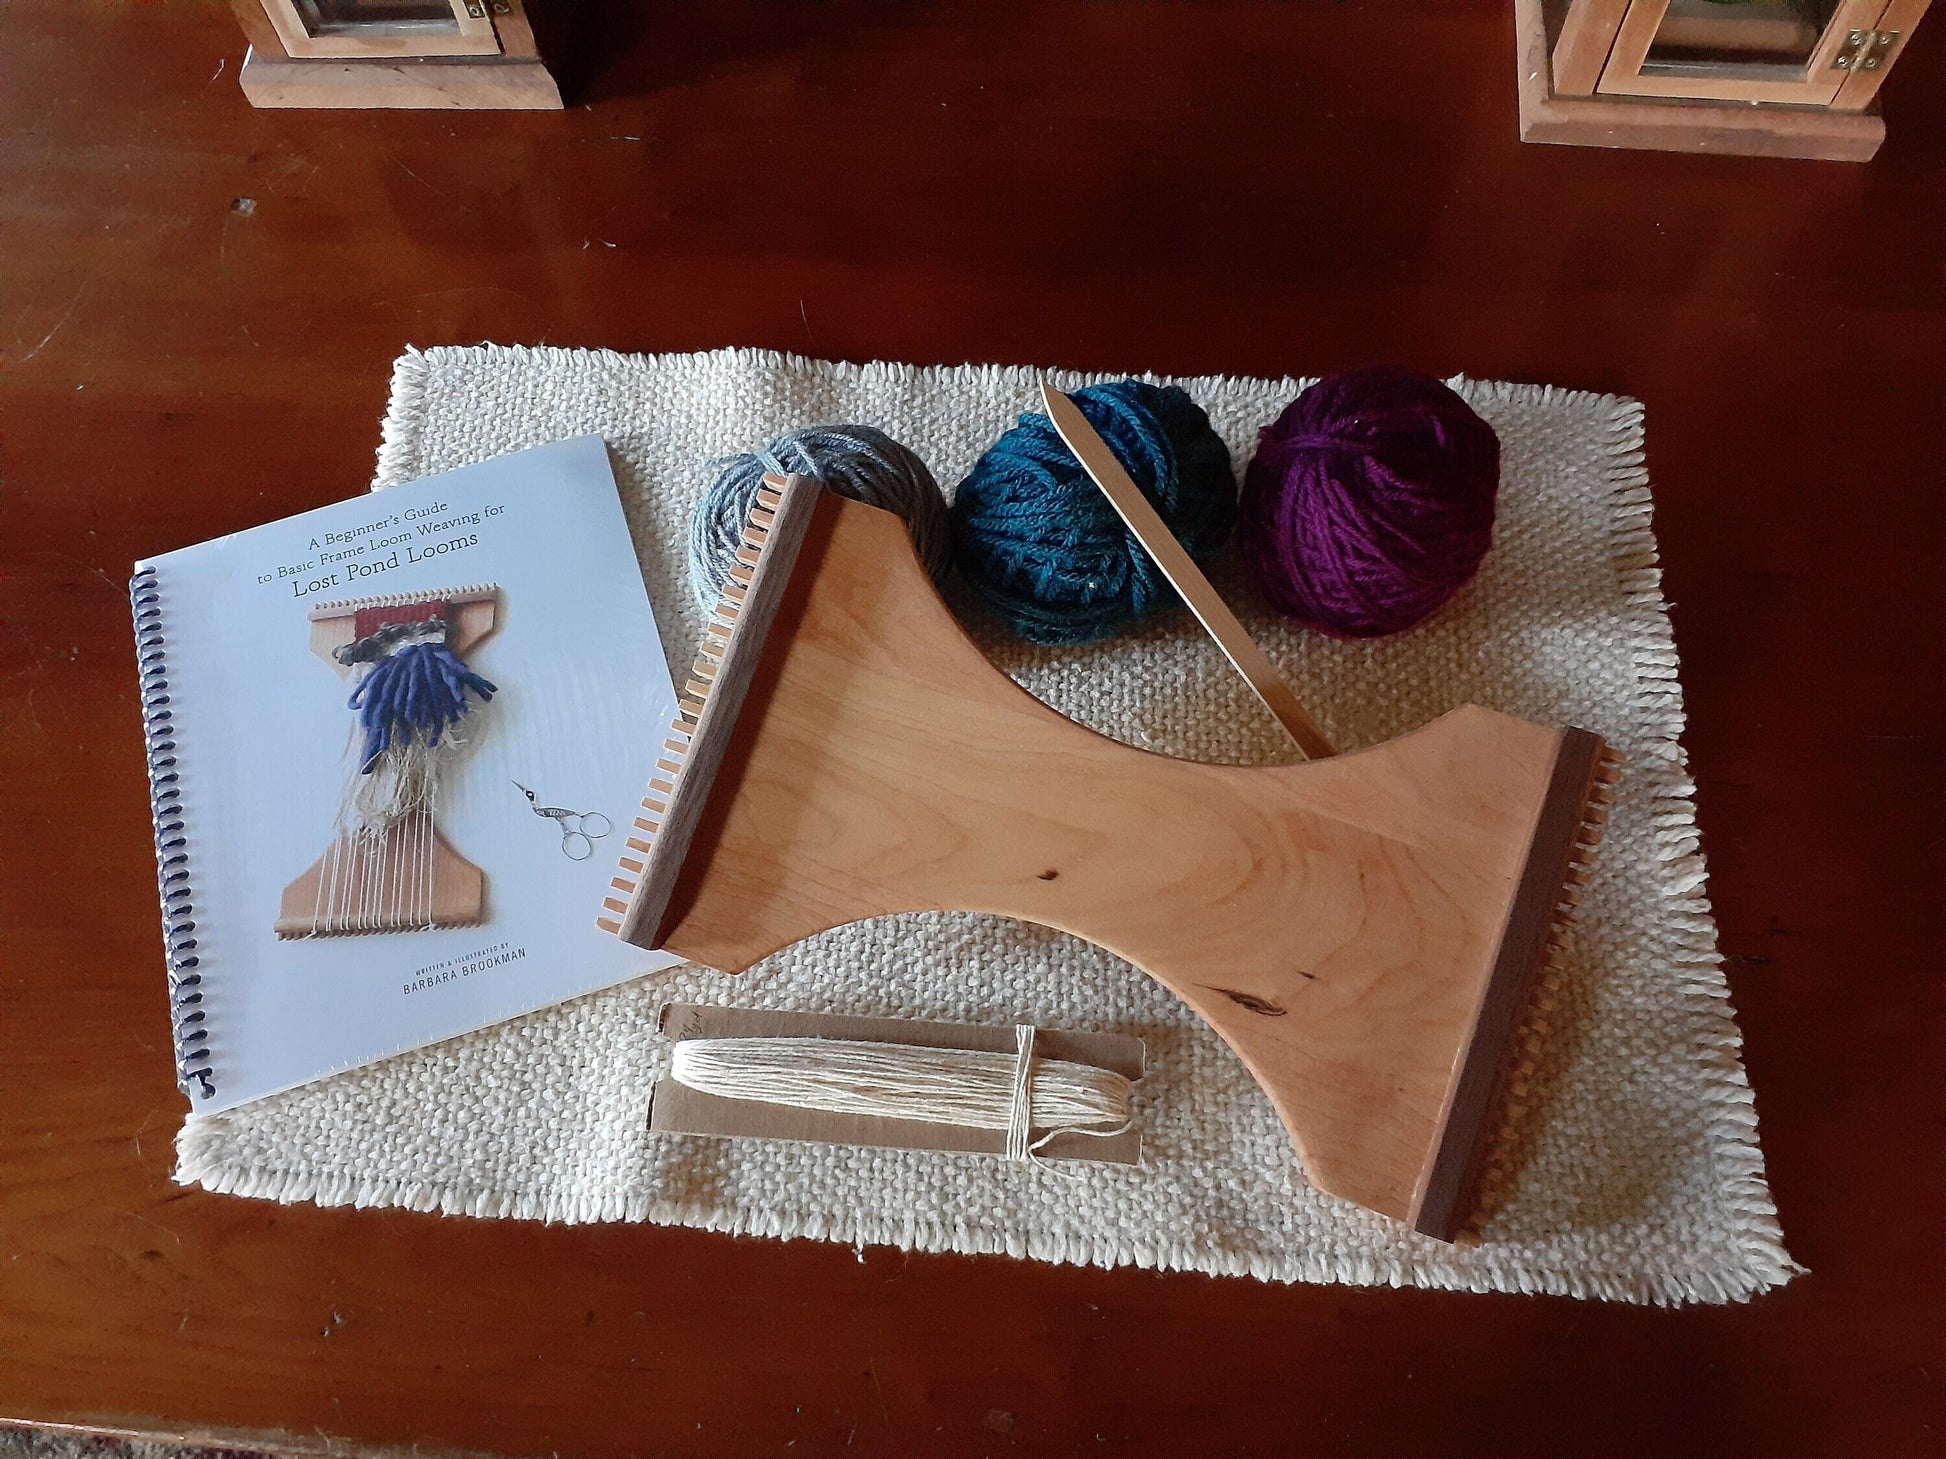 Walnut Small Wood Loom Weaving Kit